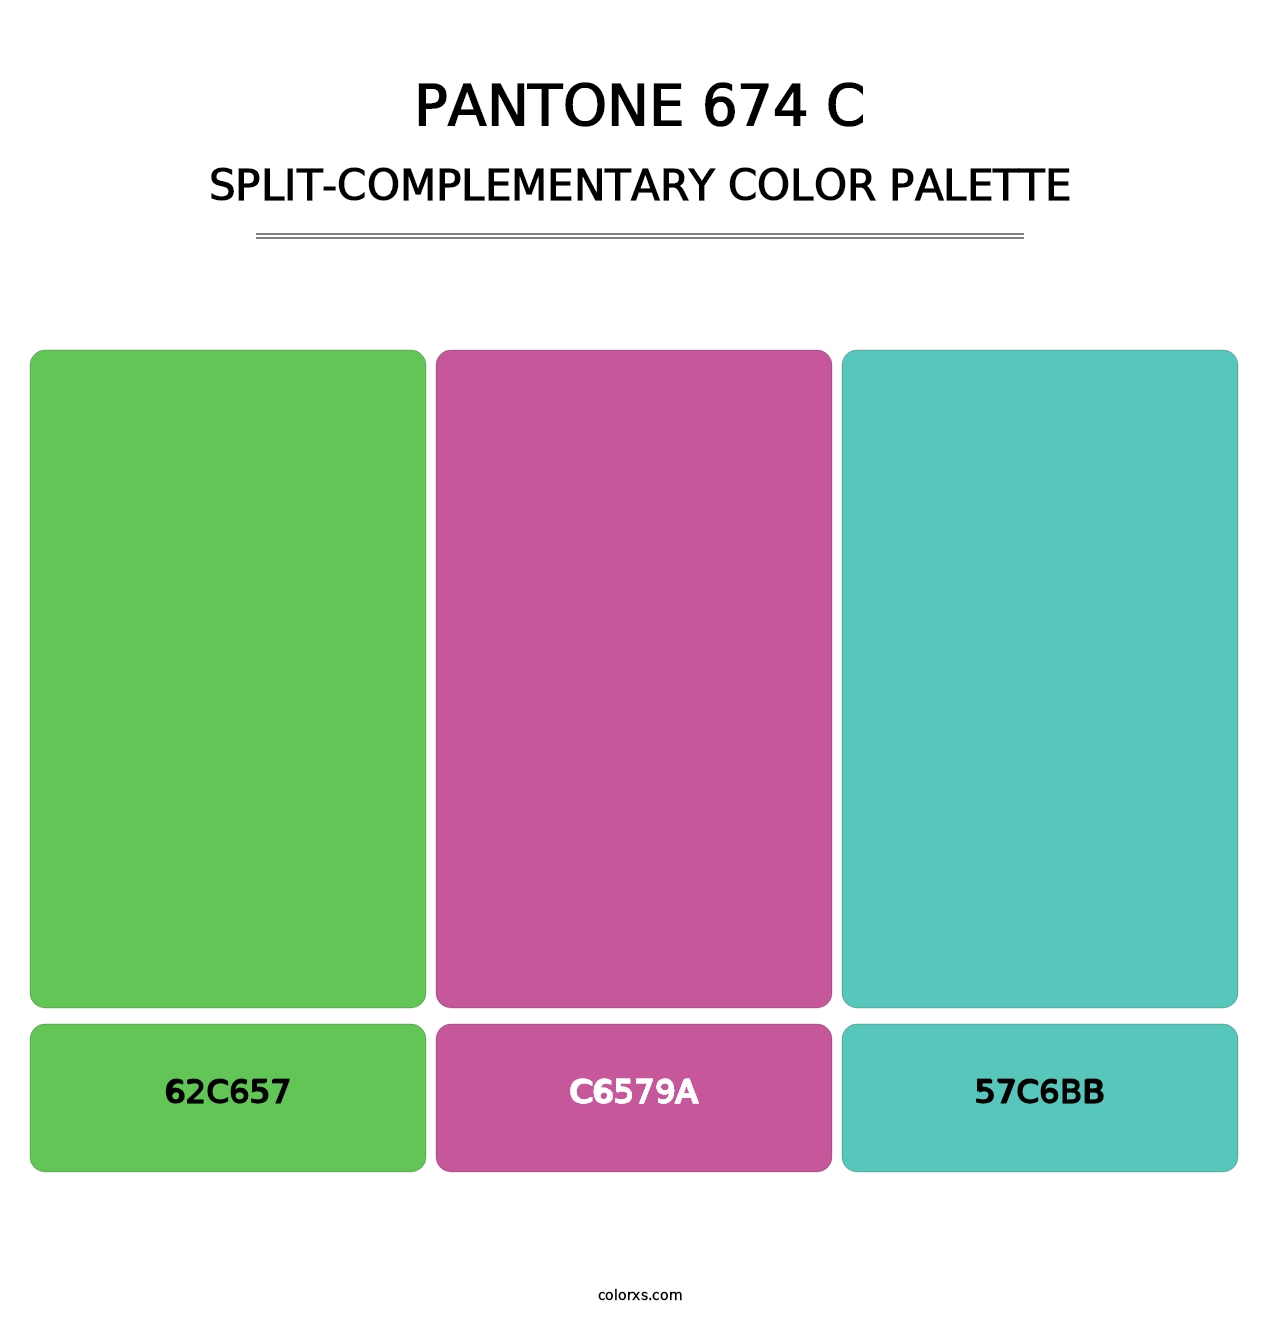 PANTONE 674 C - Split-Complementary Color Palette